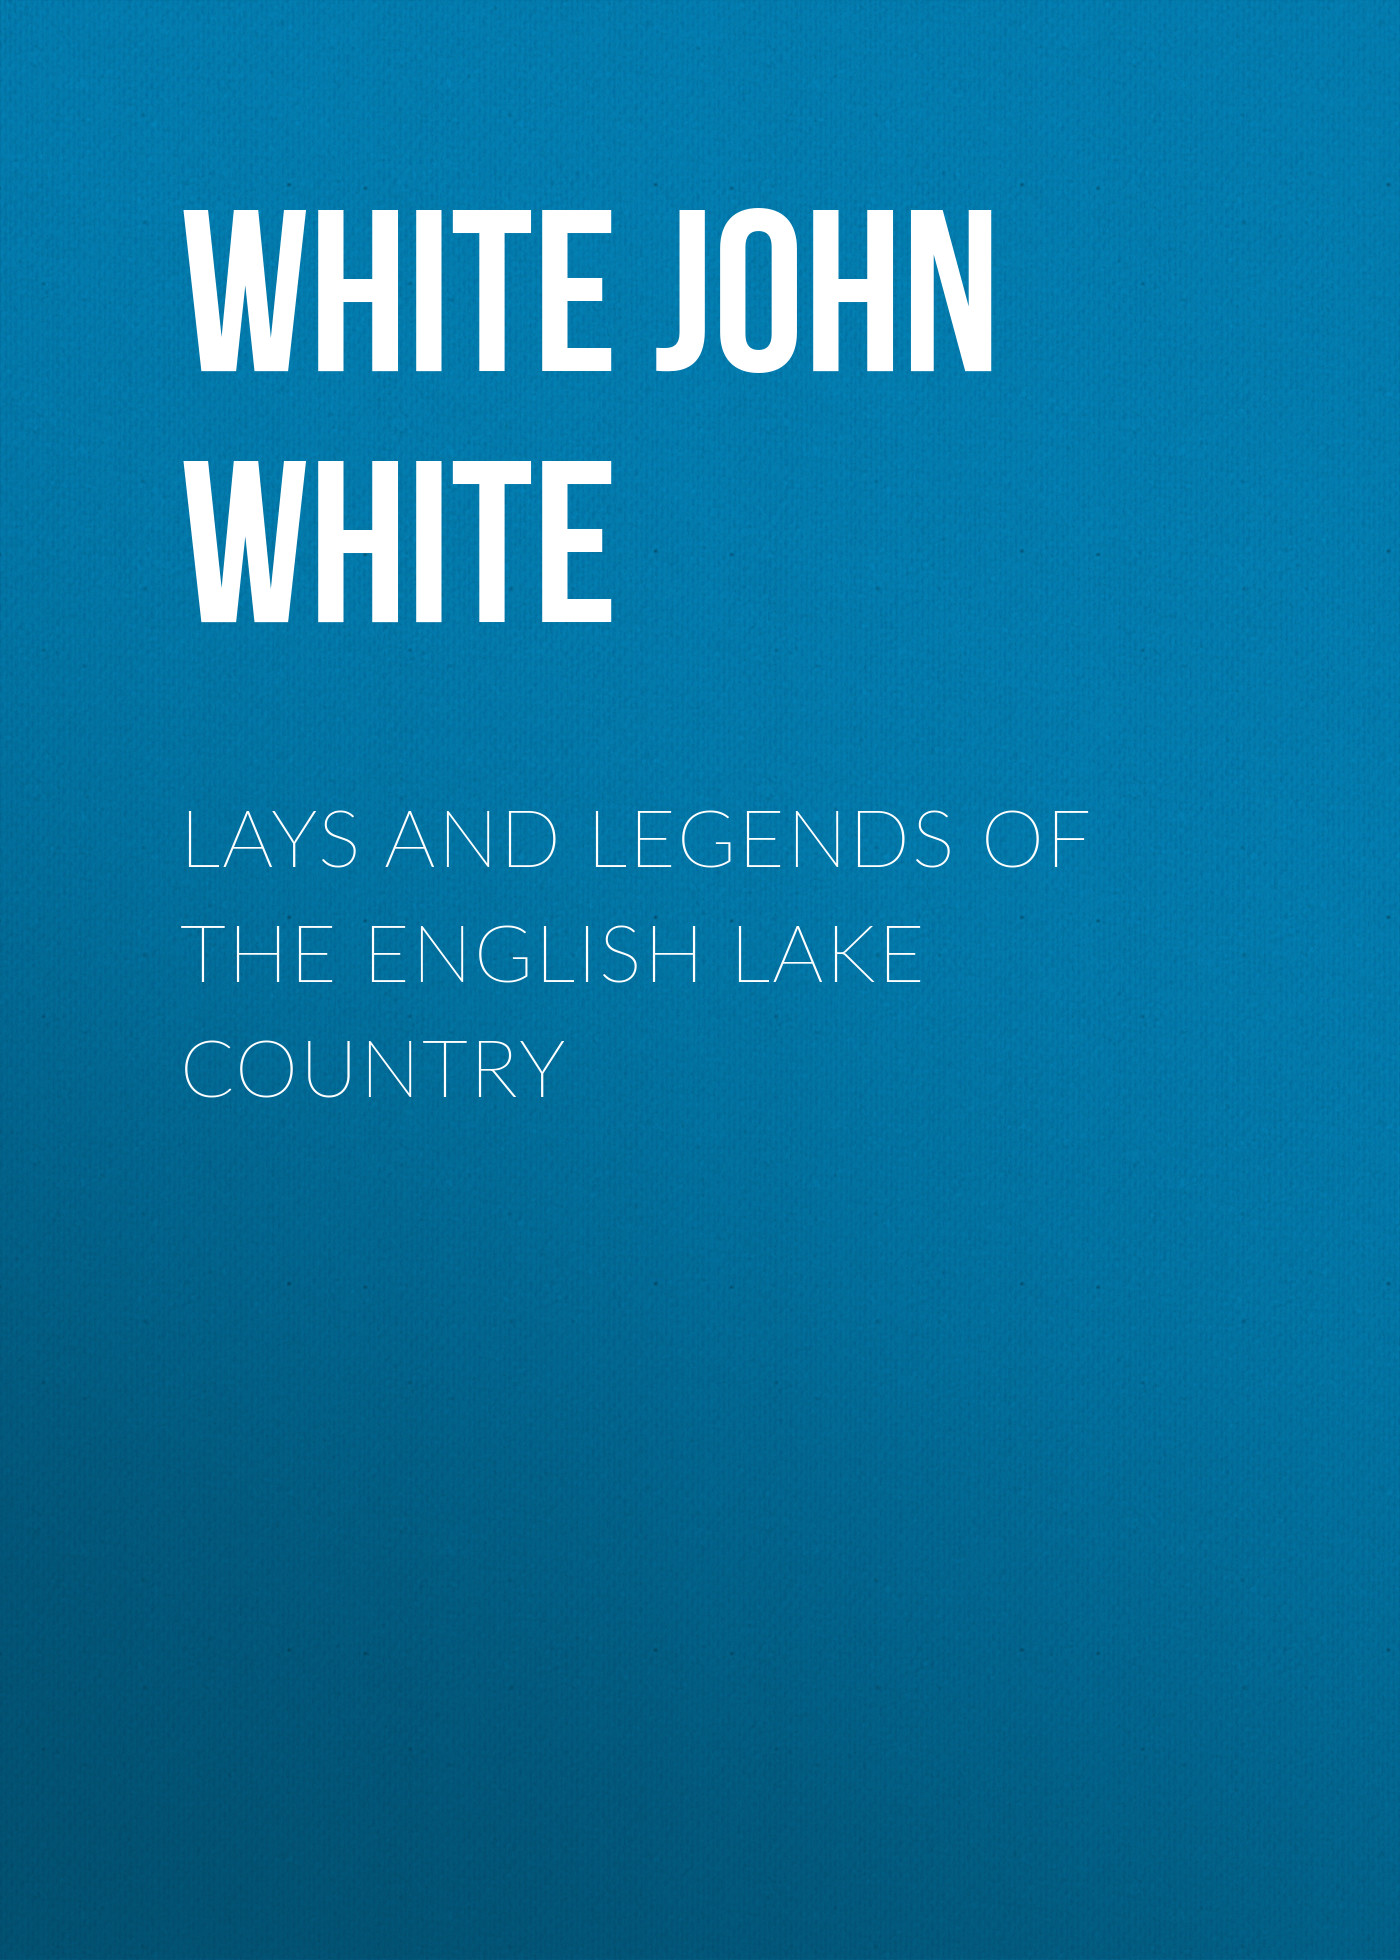 Книга Lays and Legends of the English Lake Country из серии , созданная White John White, может относится к жанру Зарубежные стихи, Поэзия, Зарубежная старинная литература, Зарубежная классика. Стоимость электронной книги Lays and Legends of the English Lake Country с идентификатором 34336362 составляет 0 руб.